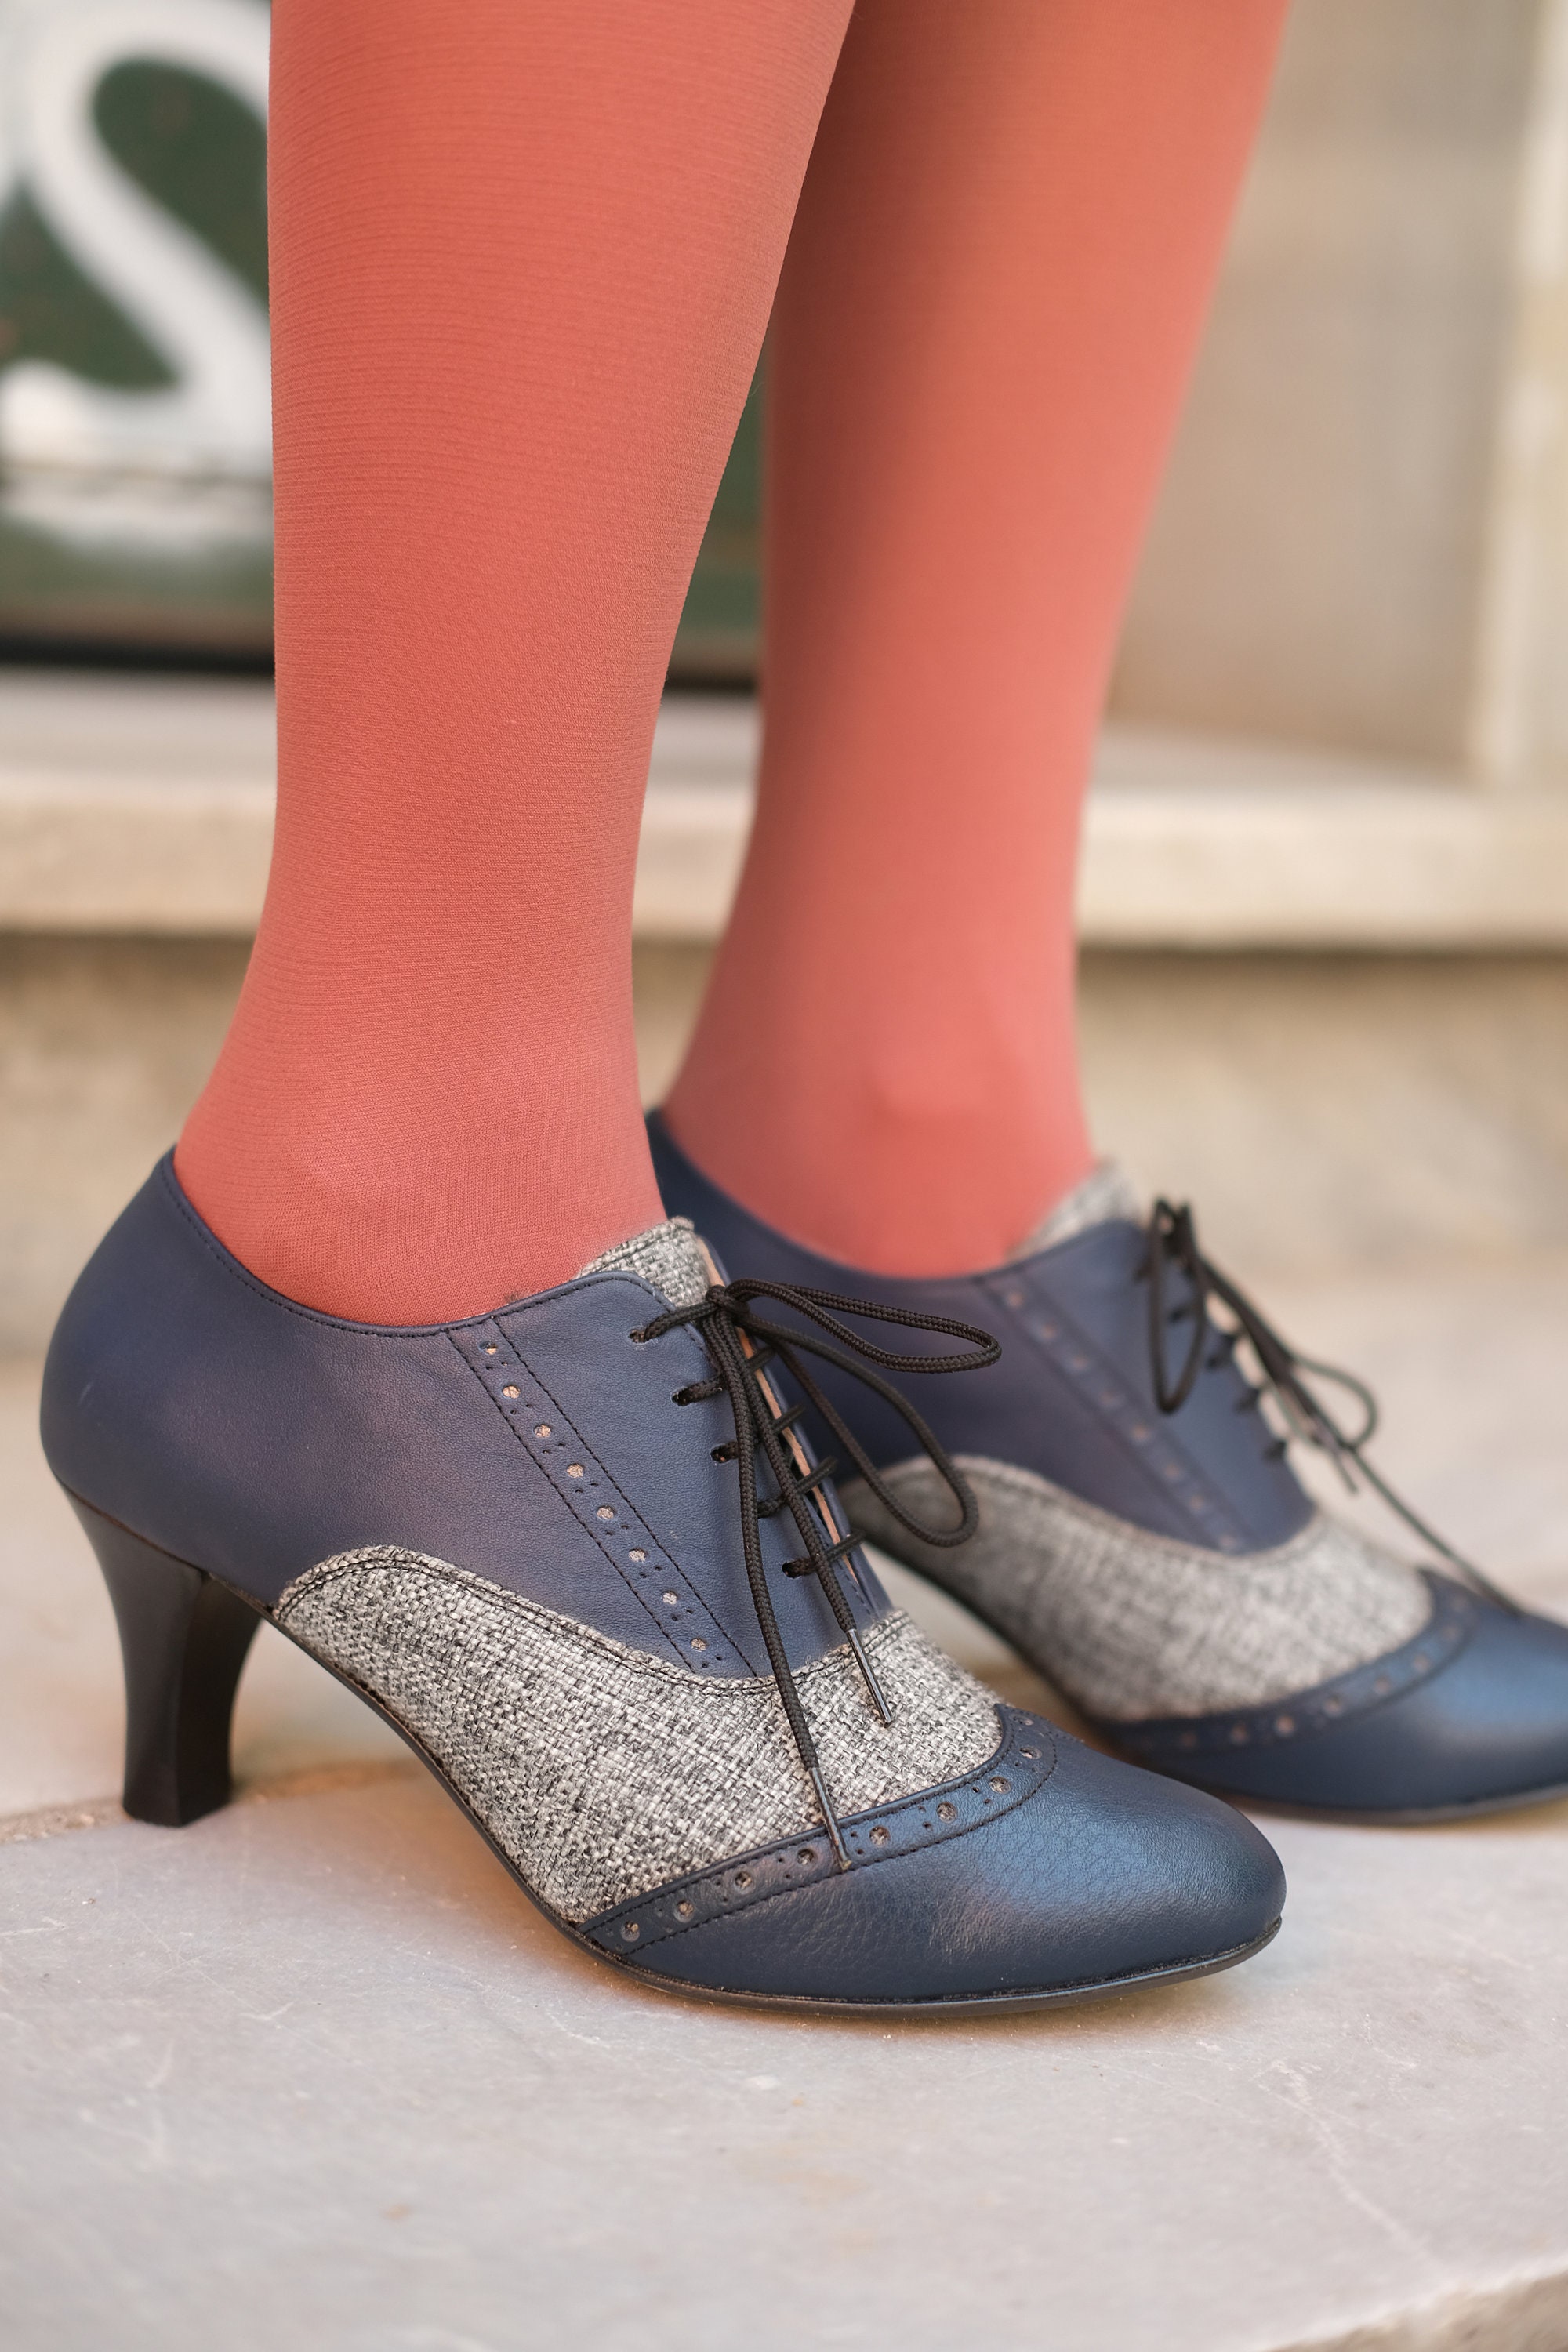 1930s Shoes - Art Deco Shoes, Heels, Boots, Sandals | Navy oxford shoes,  Navy blue oxfords, Blue oxford shoes